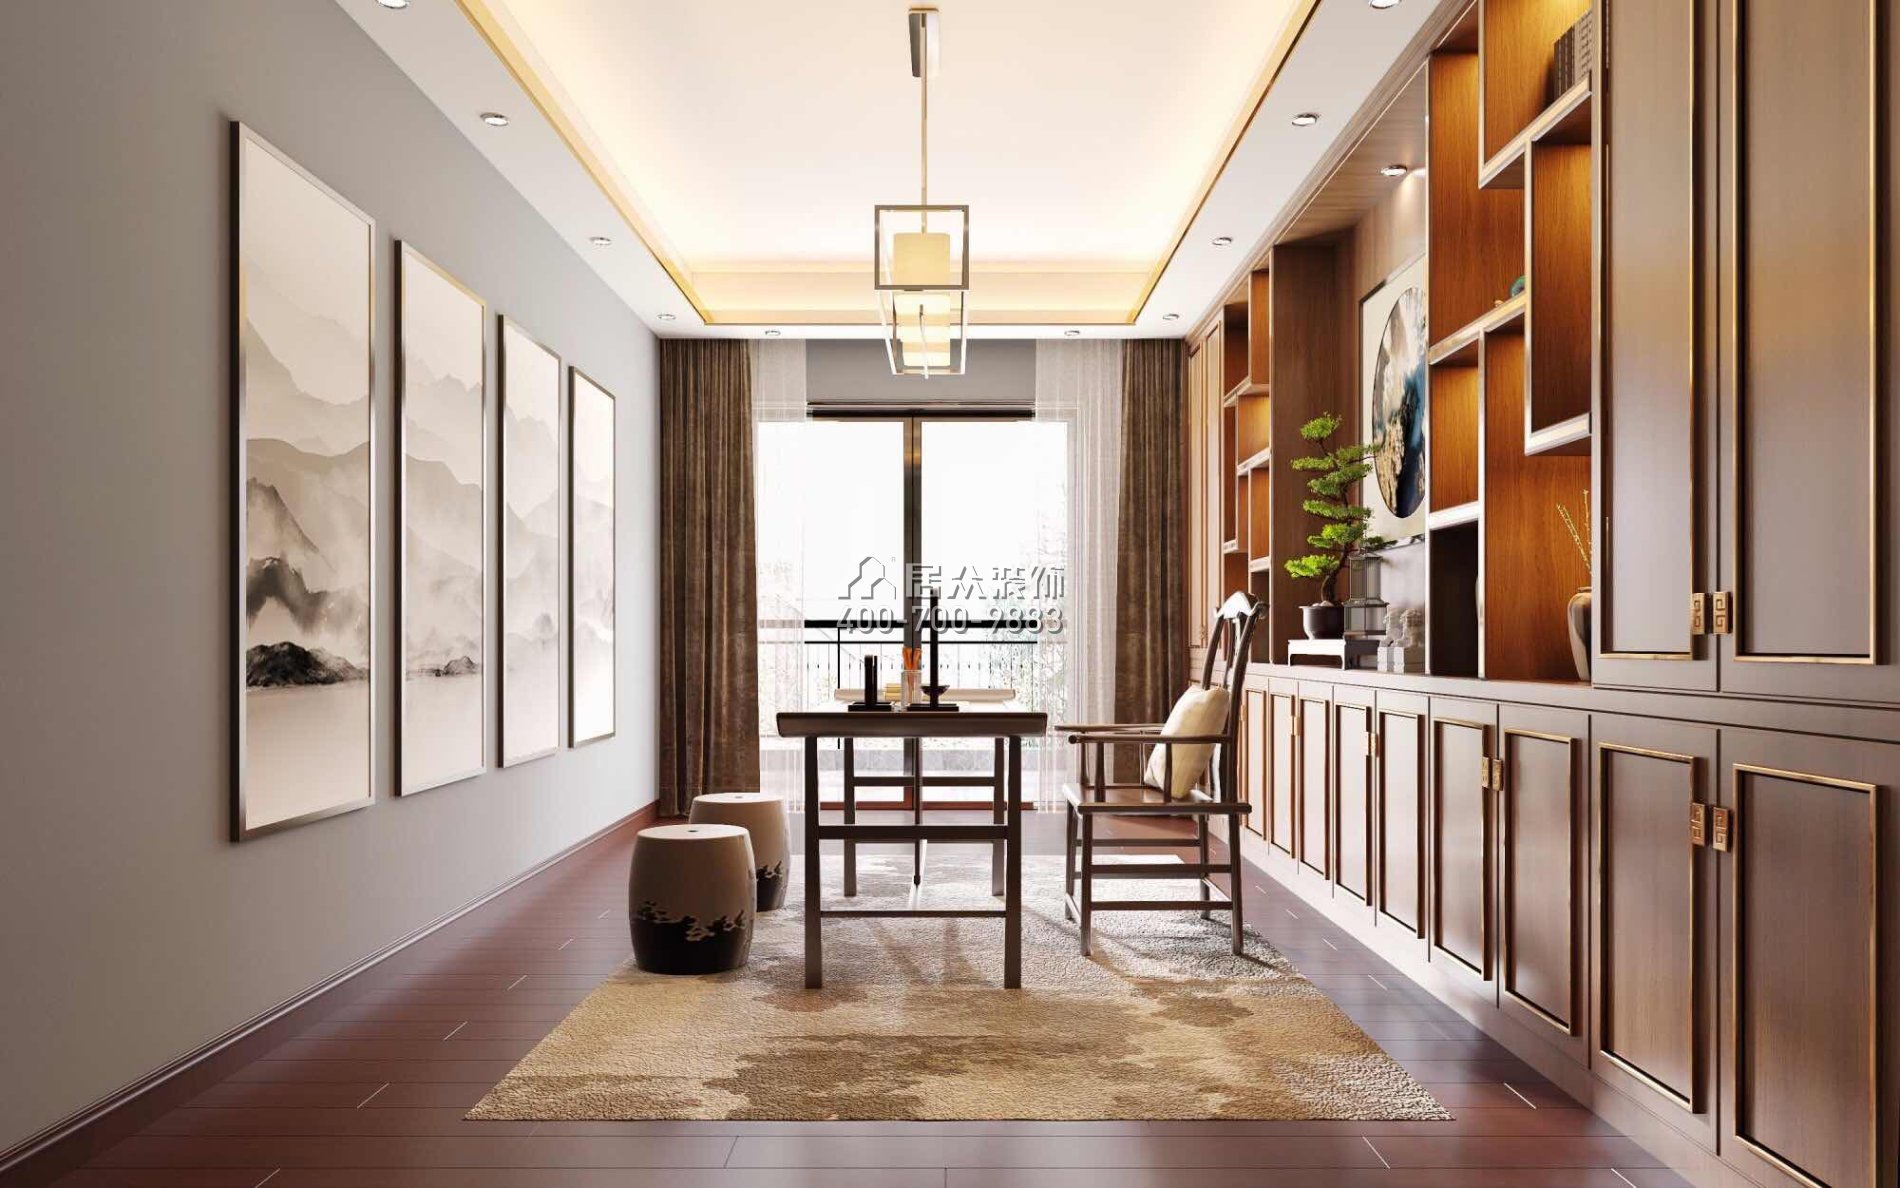 格力廣場三期216平方米中式風格平層戶型客廳裝修效果圖